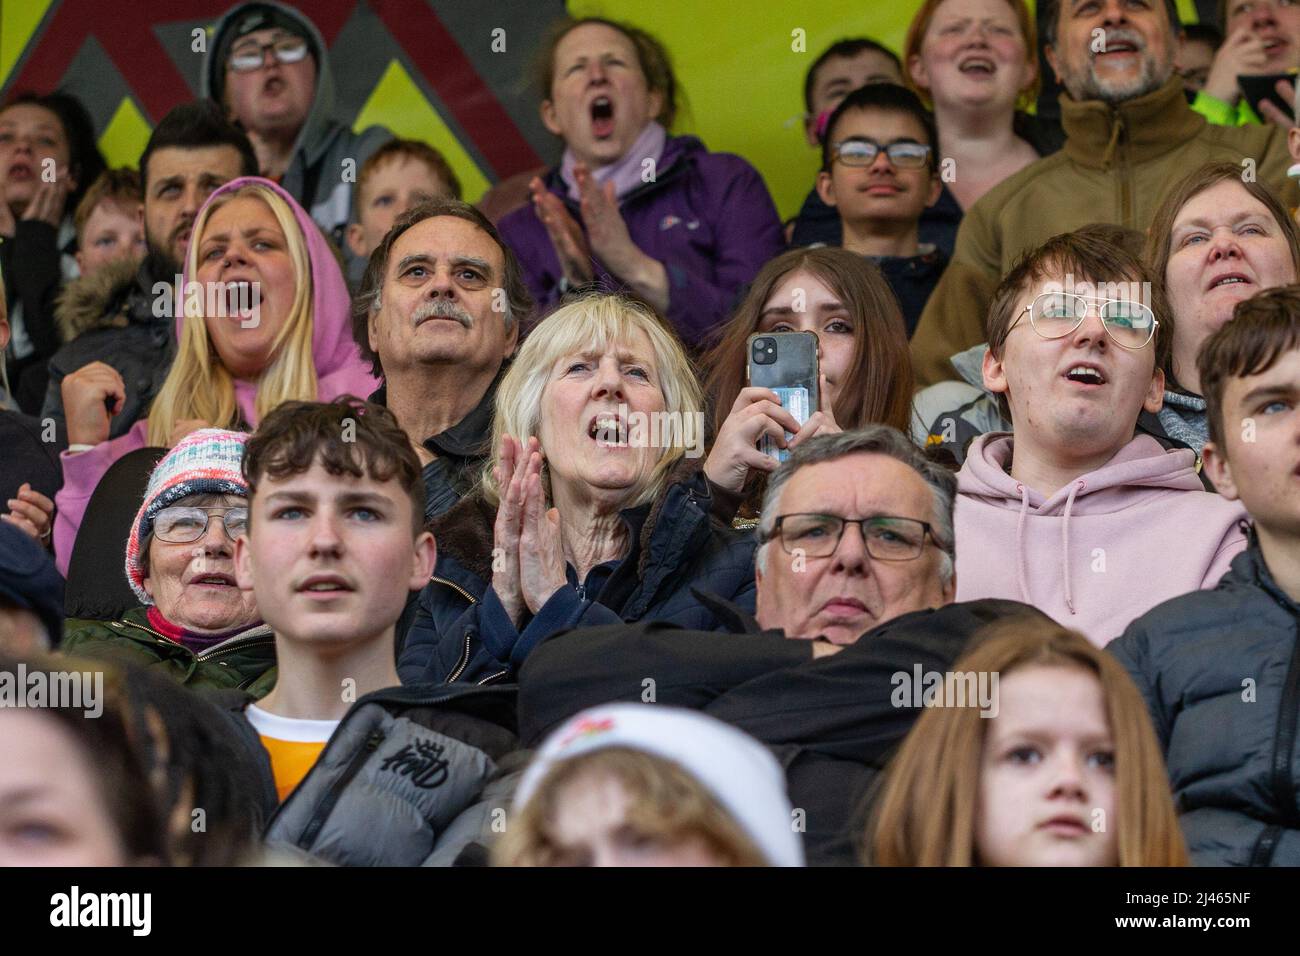 Los aficionados al fútbol y los espectadores con expresiones faciales reaccionan al juego que están viendo Foto de stock